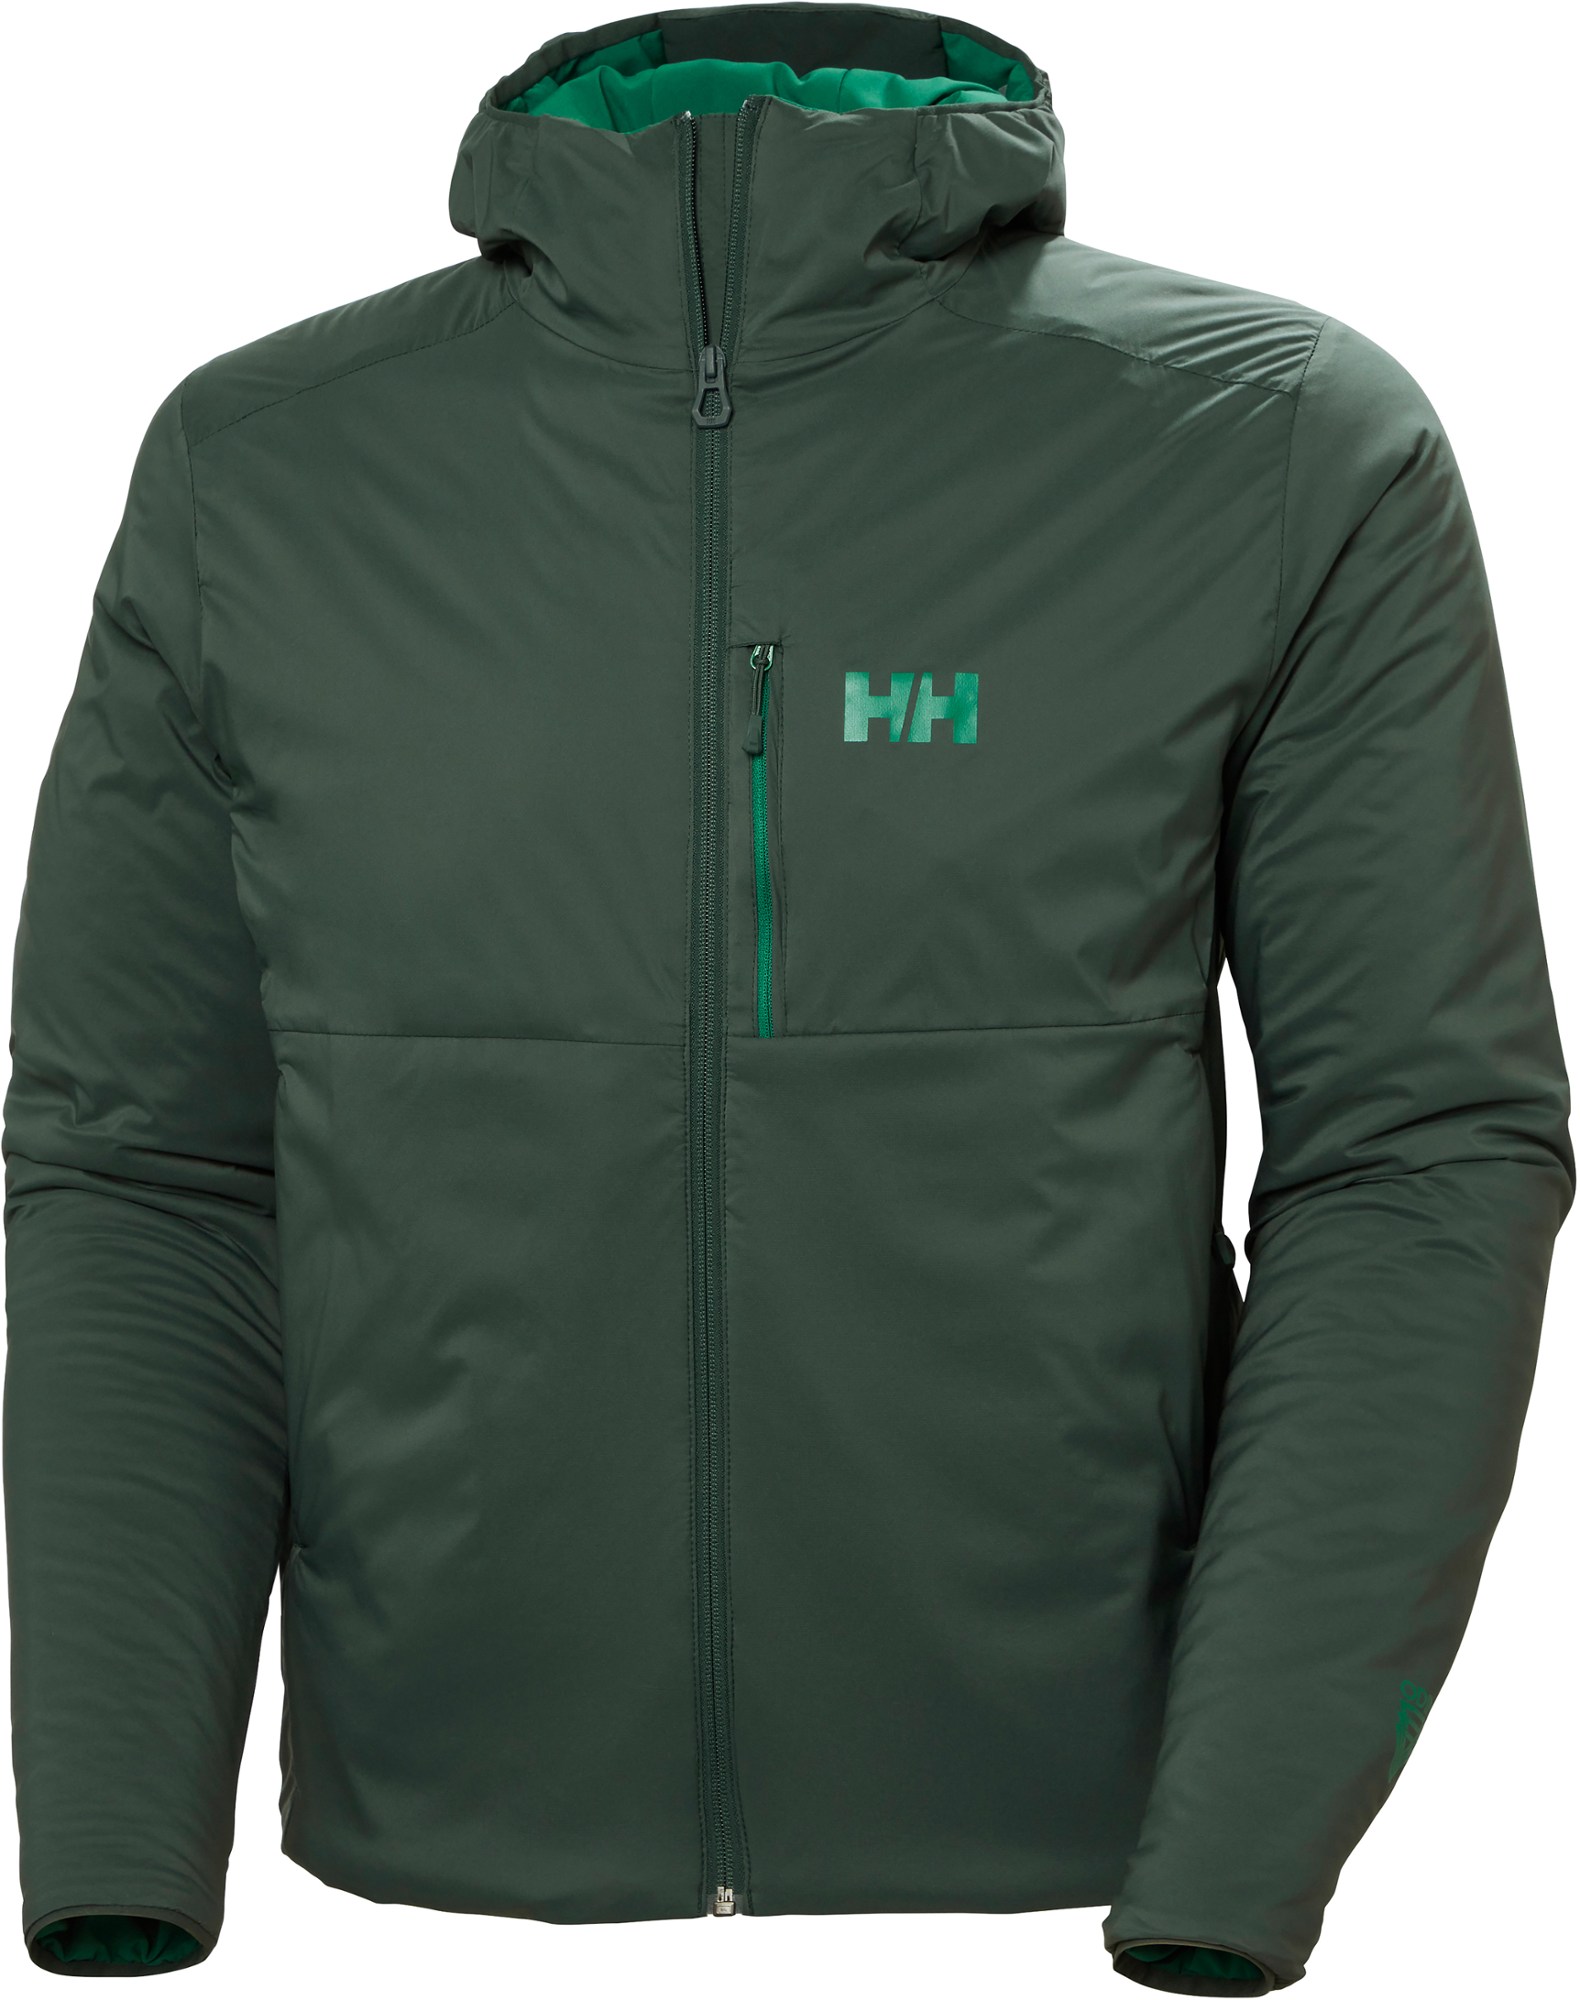 Утепленная куртка Odin Stretch Hooded - Мужская Helly Hansen, зеленый